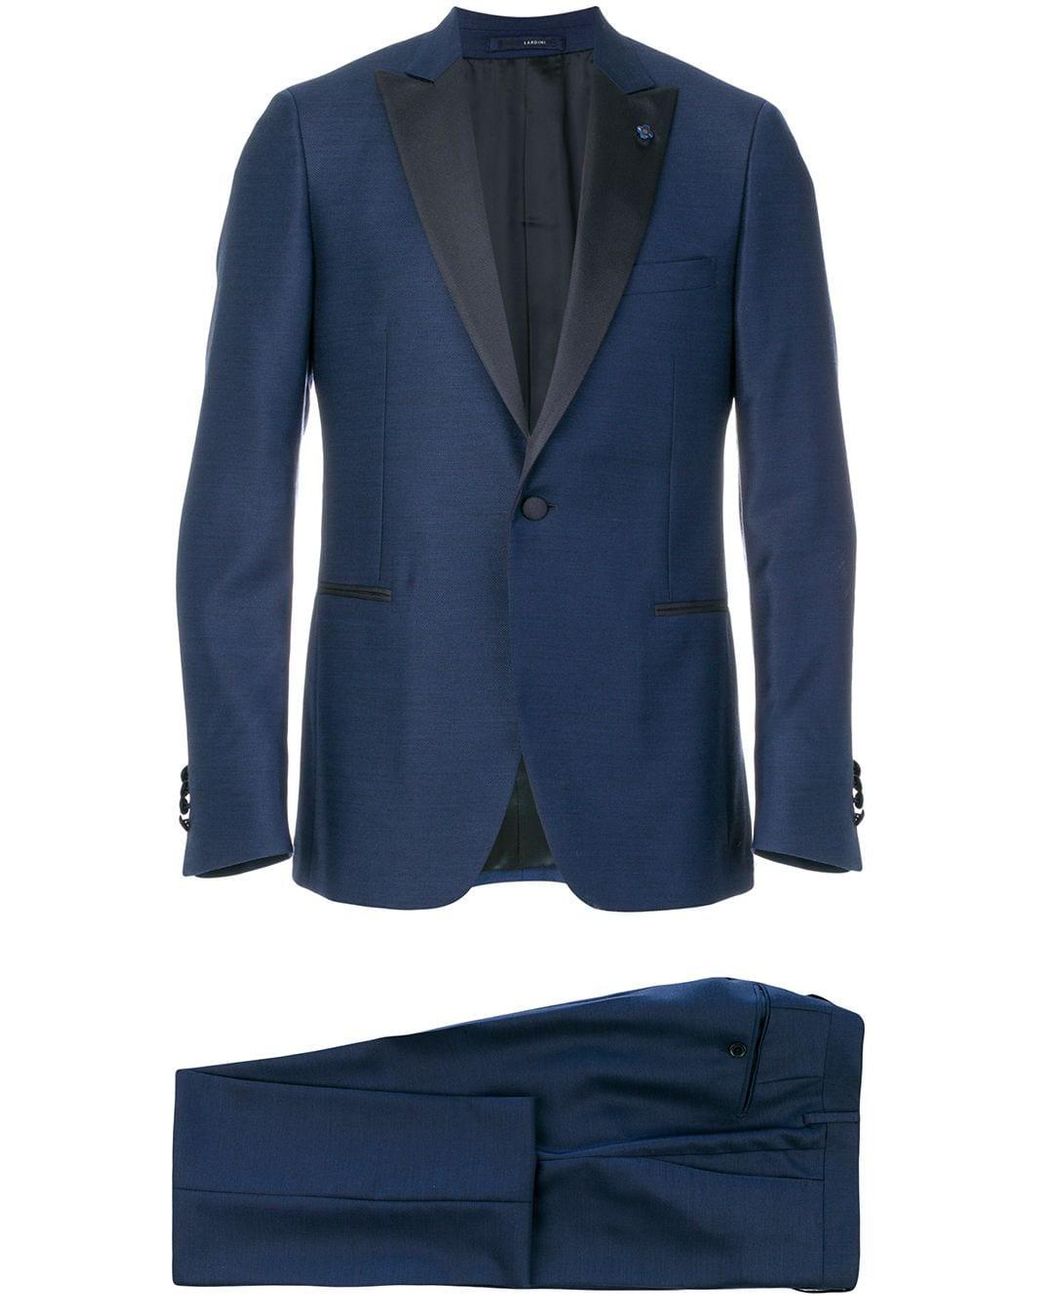 Lardini Wool Contrast Lapel Suit in Blue for Men - Lyst